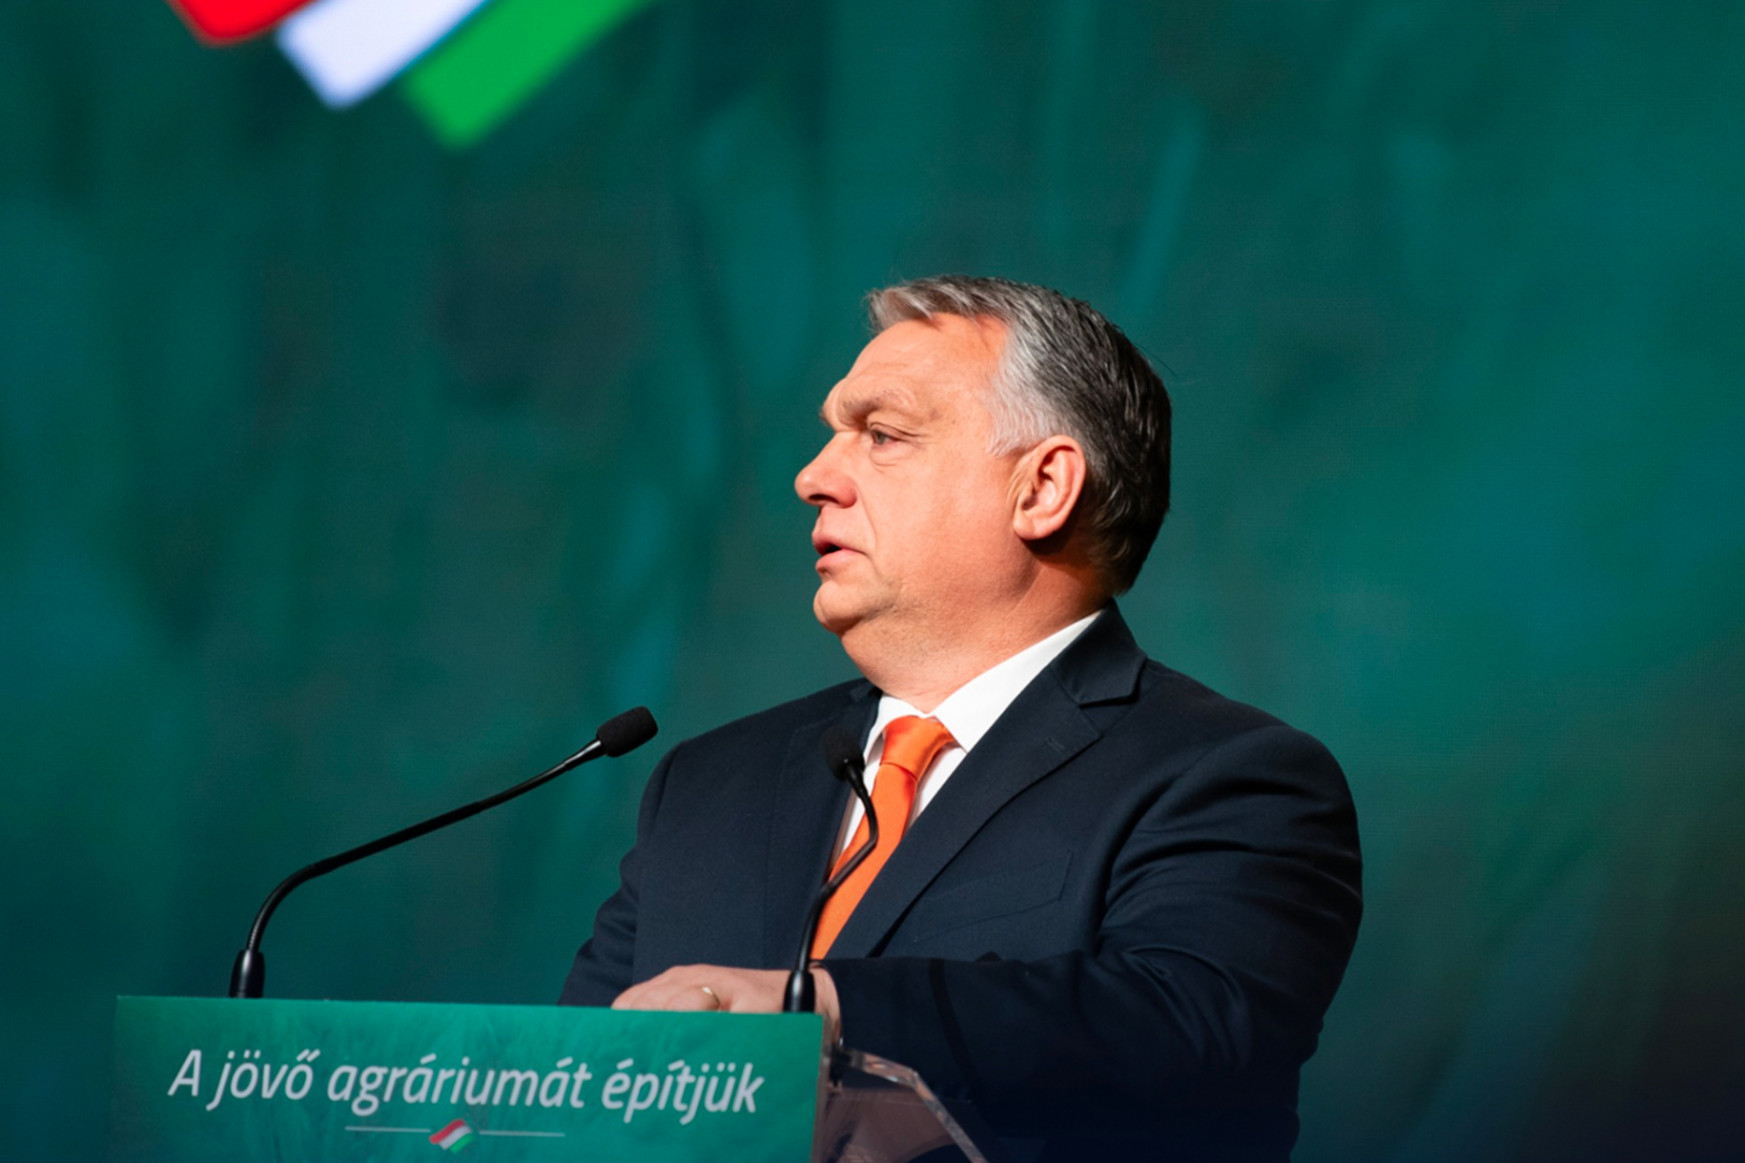 A békegalambbá sminkelt Orbánt imádják a rajongók, de az orosz propaganda tovább dübörög a háttérben